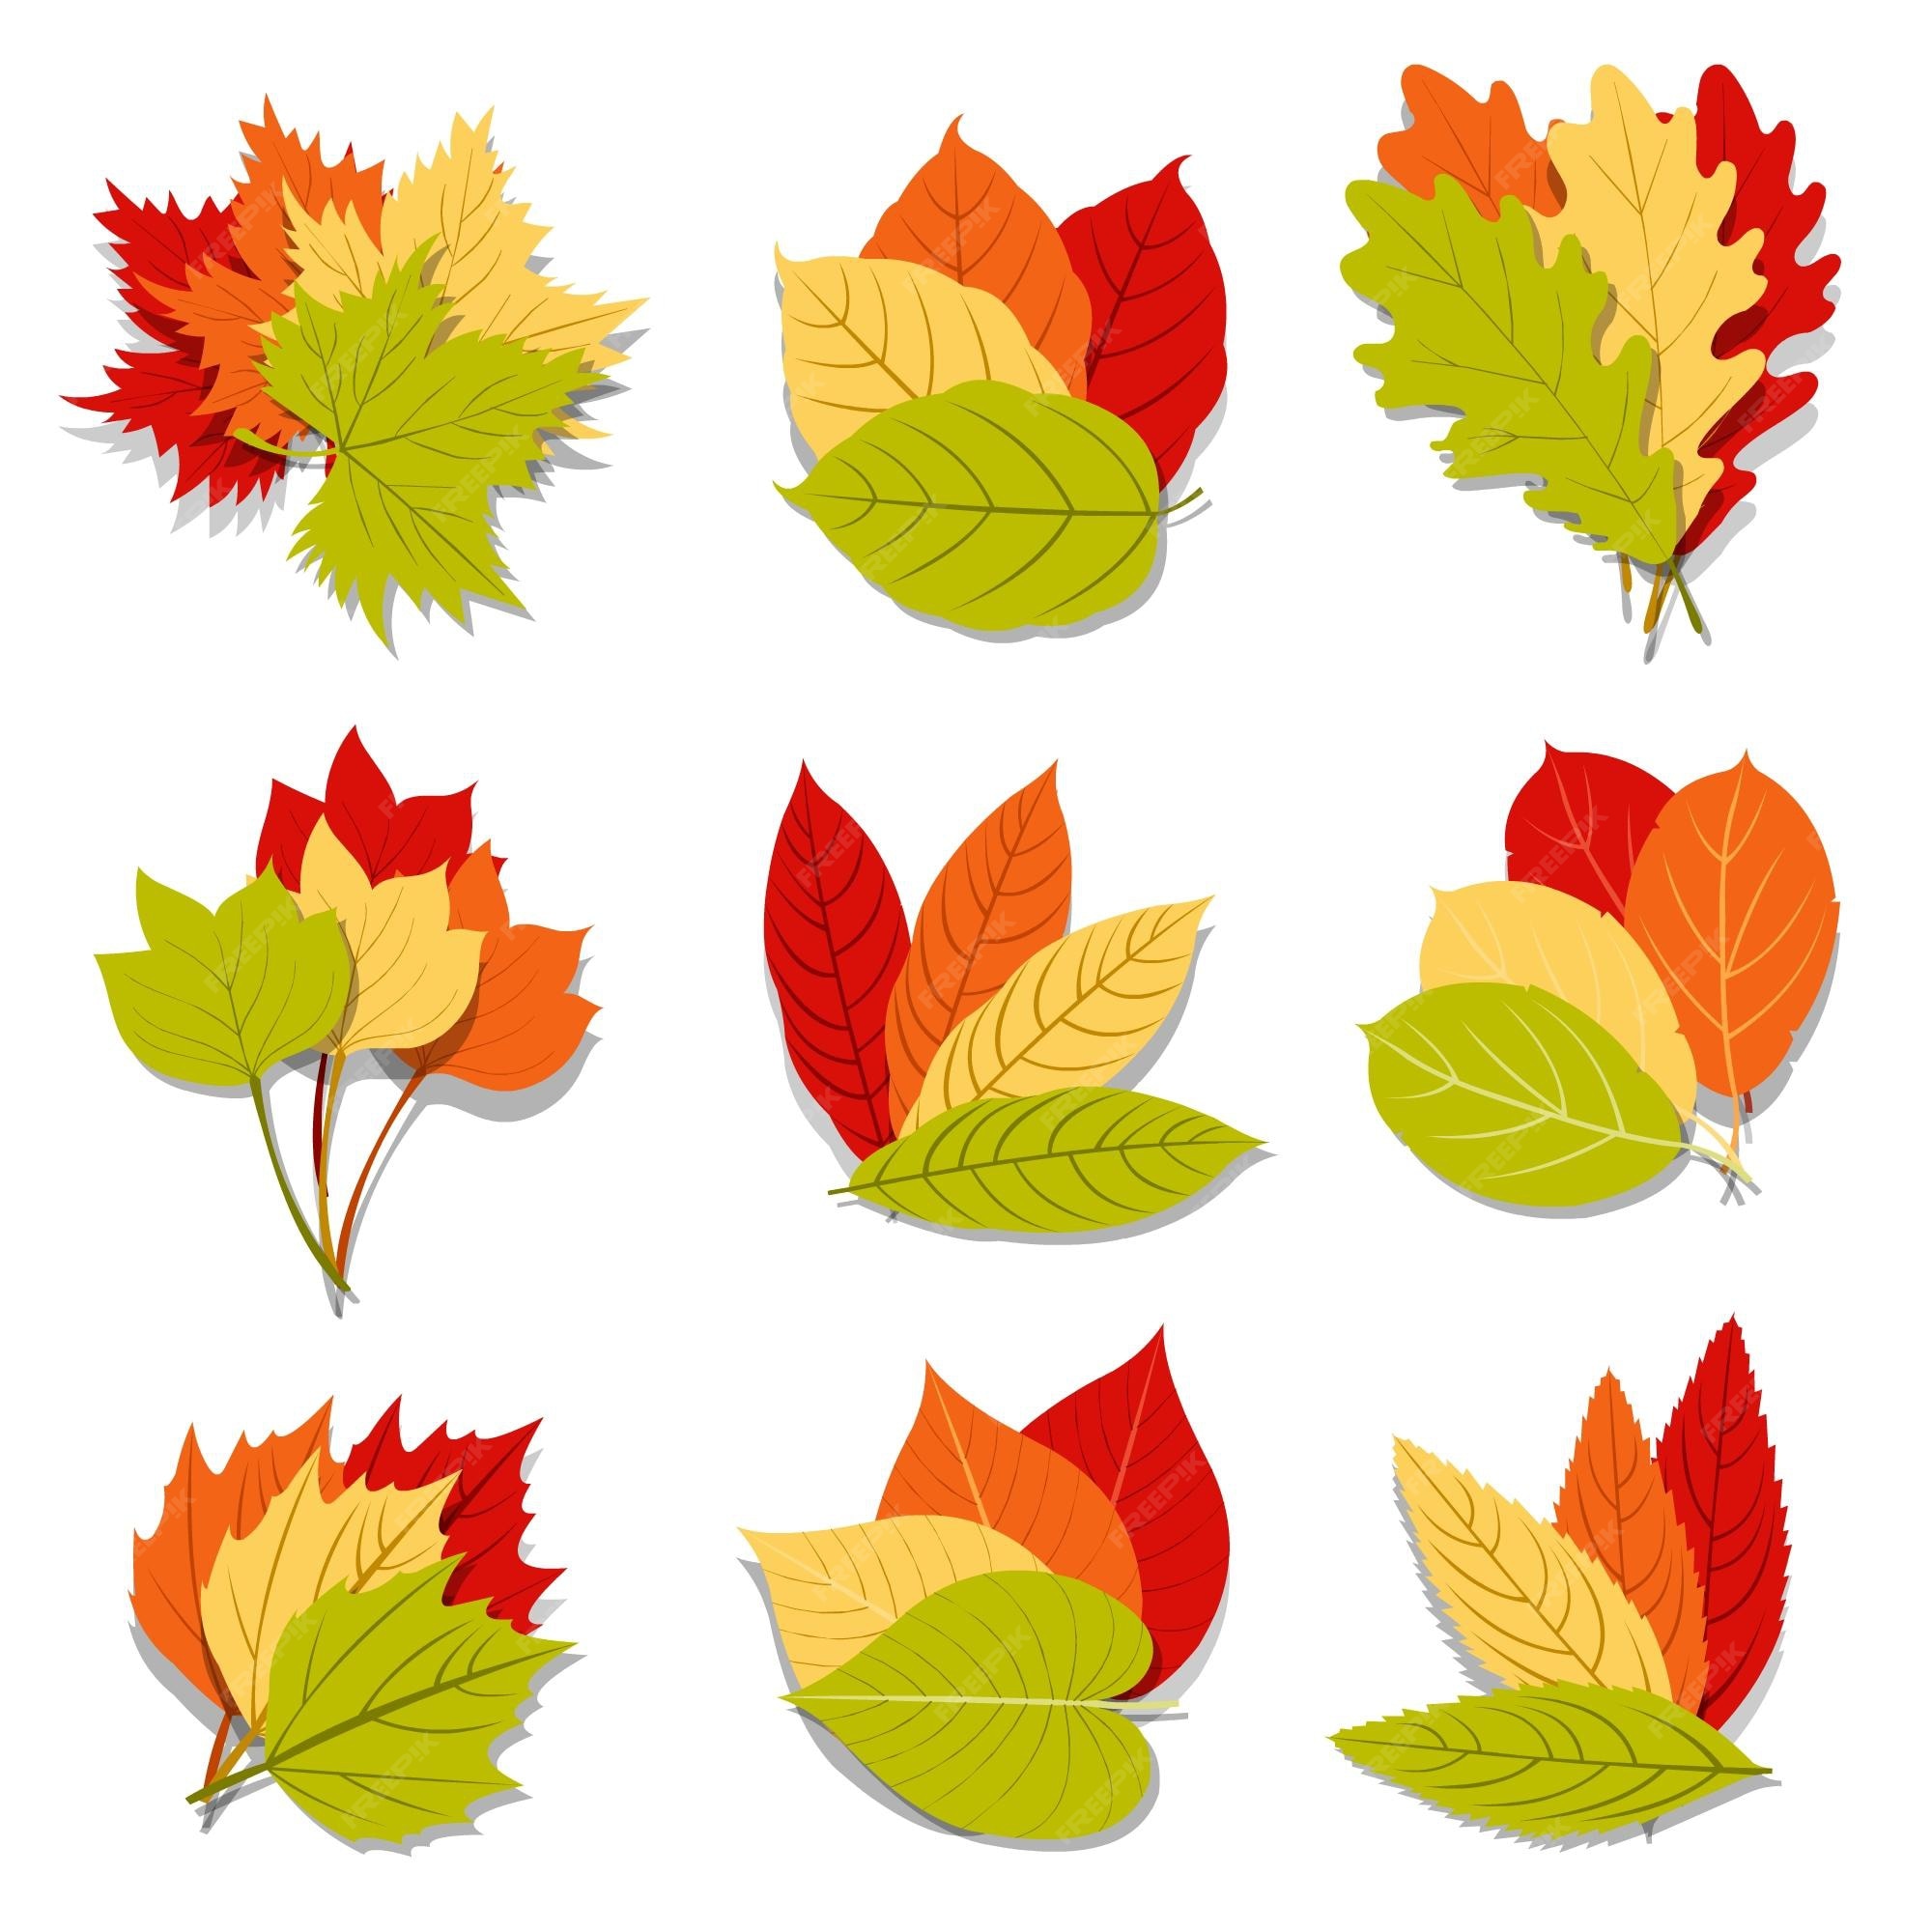 Maple Leaf Clip Art Images - Free Download on Freepik